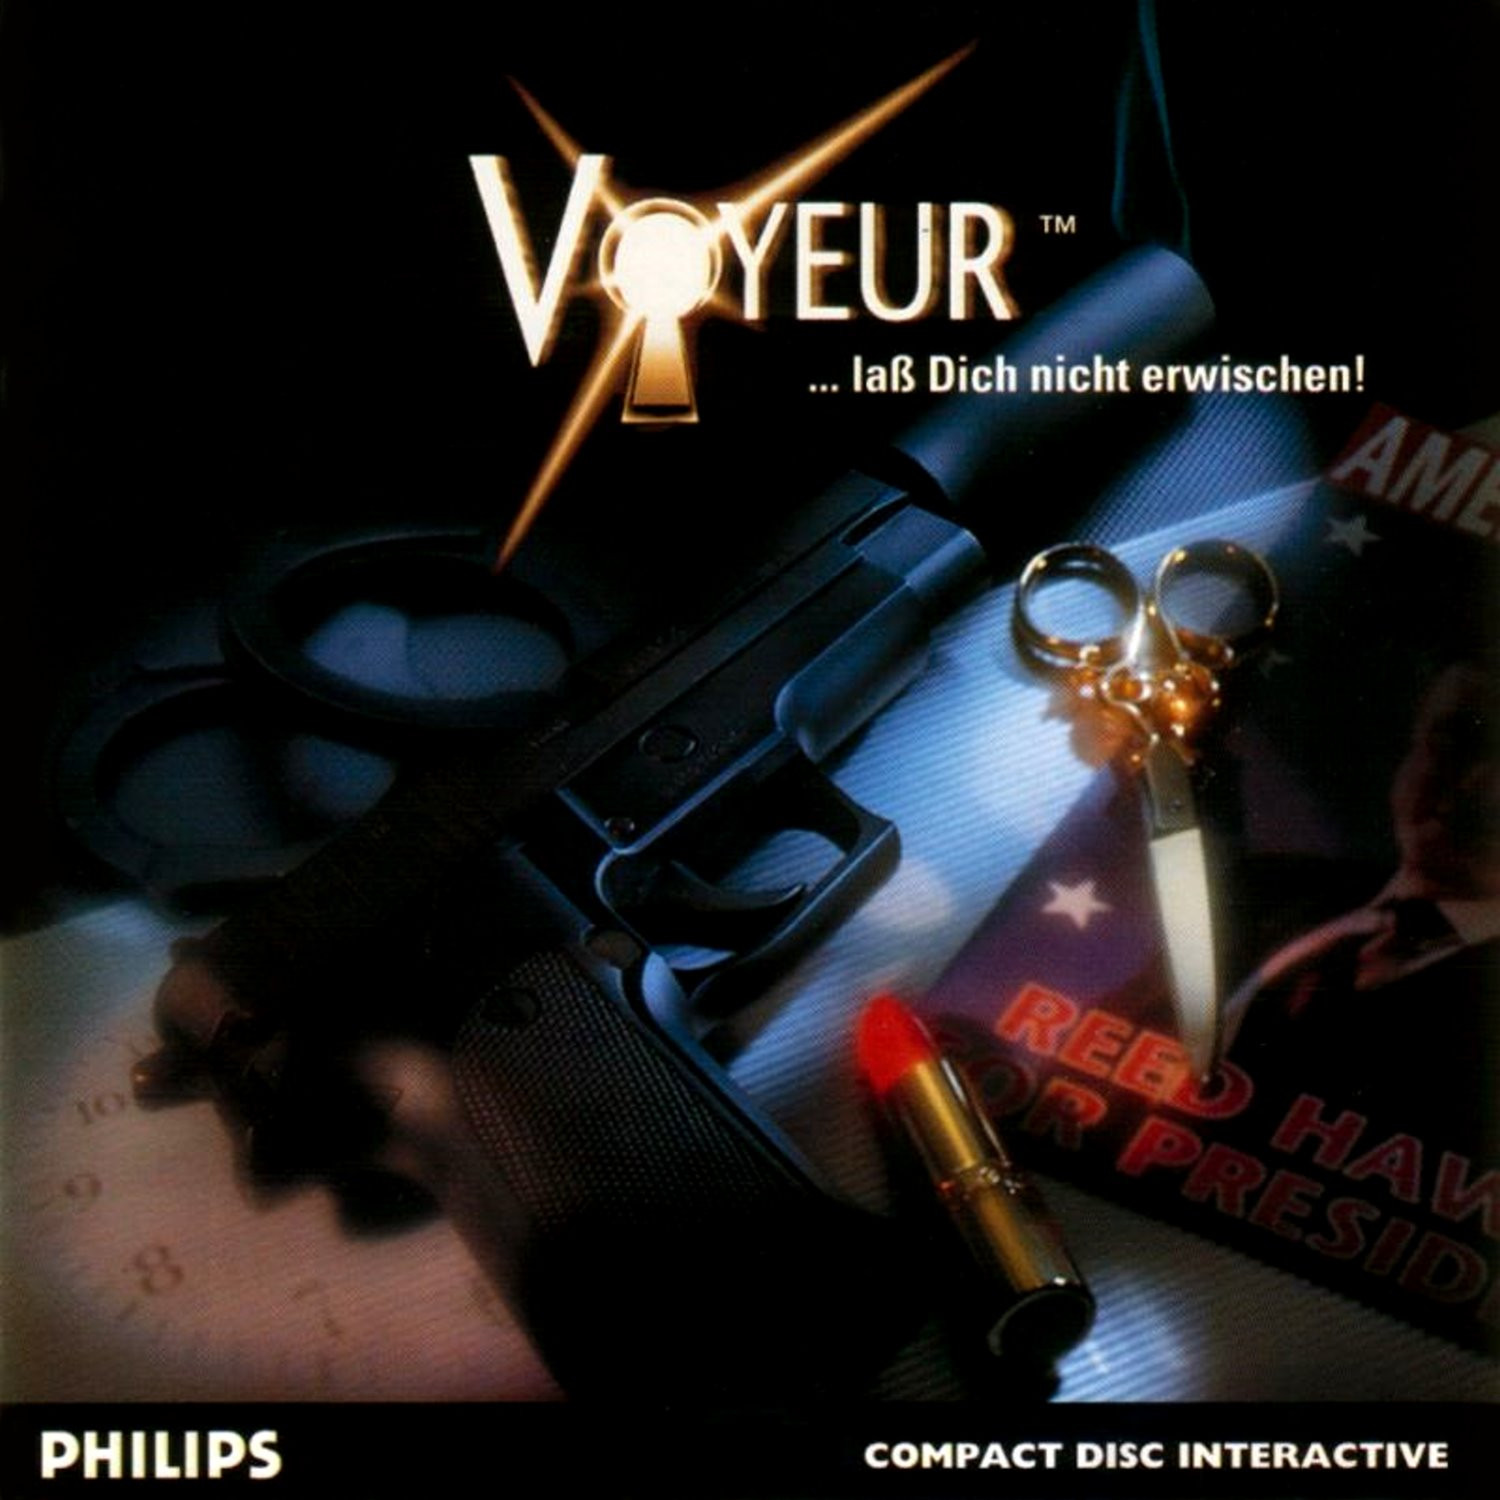 Voyeur™ – The World of CD-i